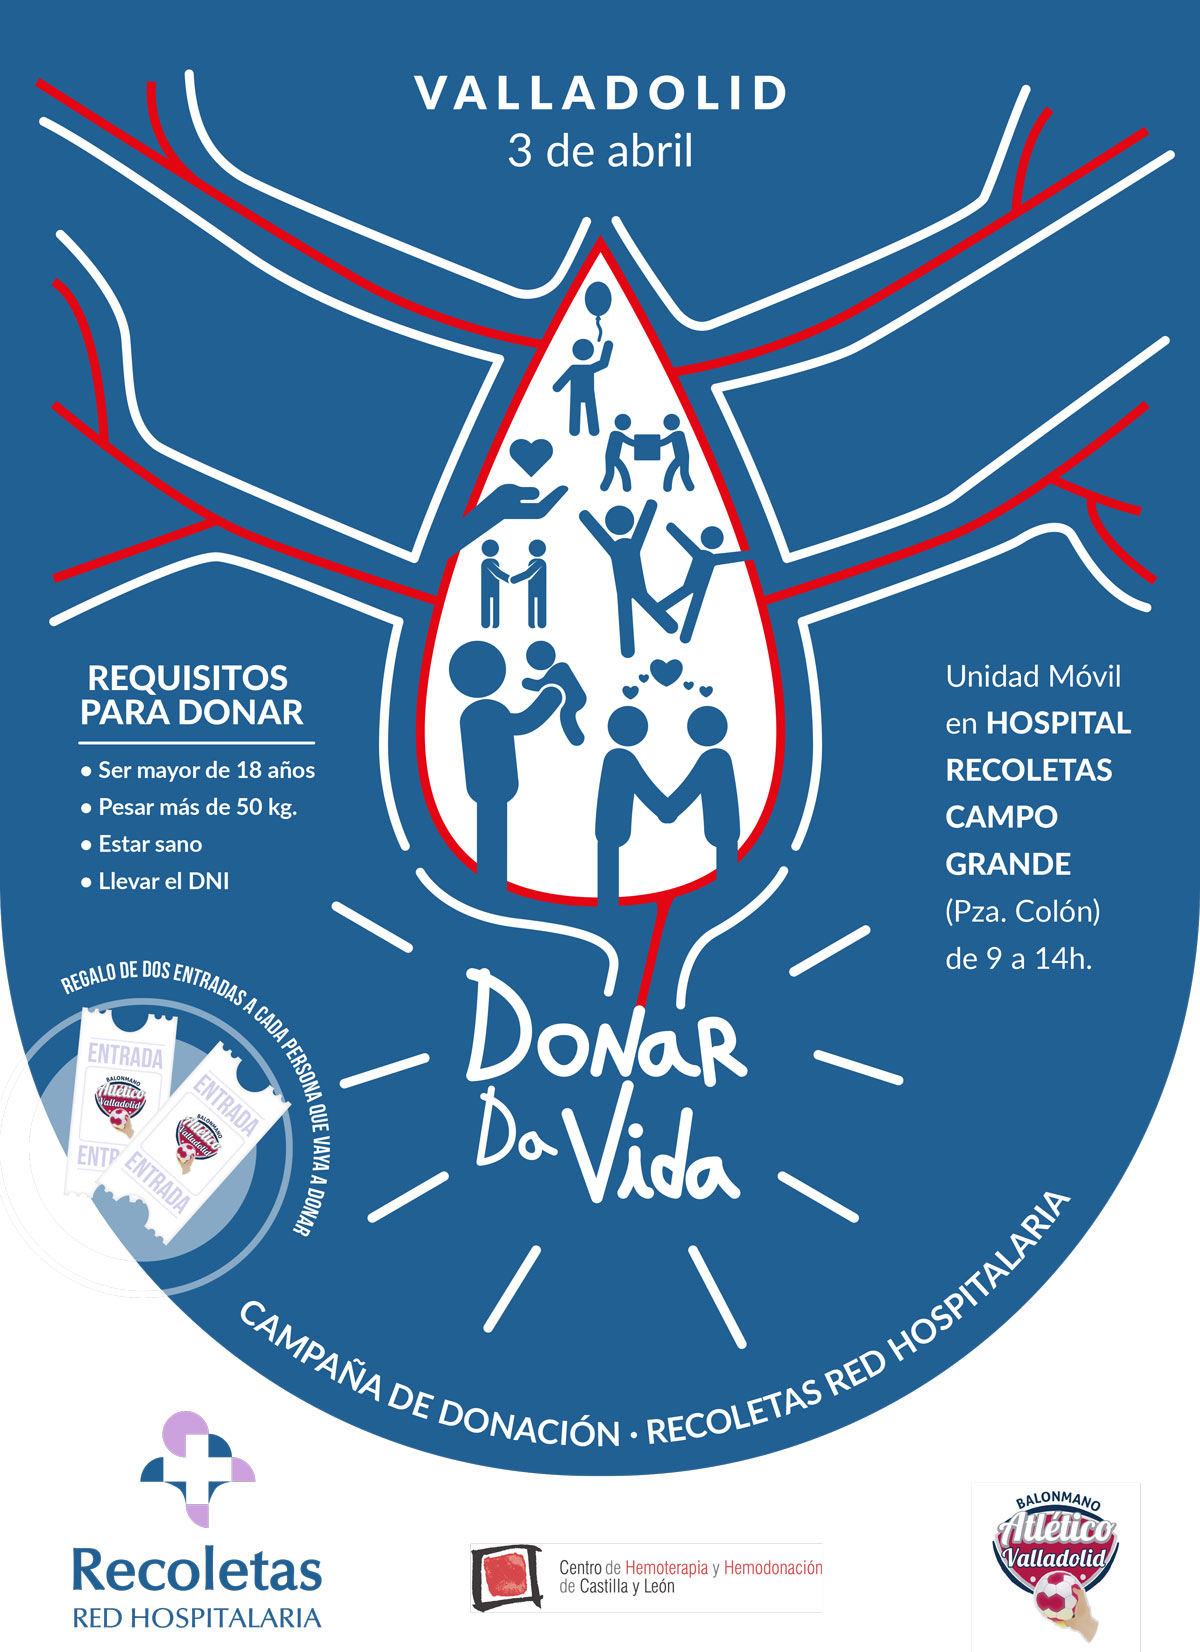 Atlético Valladolid y Recoletas Red Hospitalaria lanzan la campaña ‘Donar da vida’ para animar a la sociedad a donar sangre